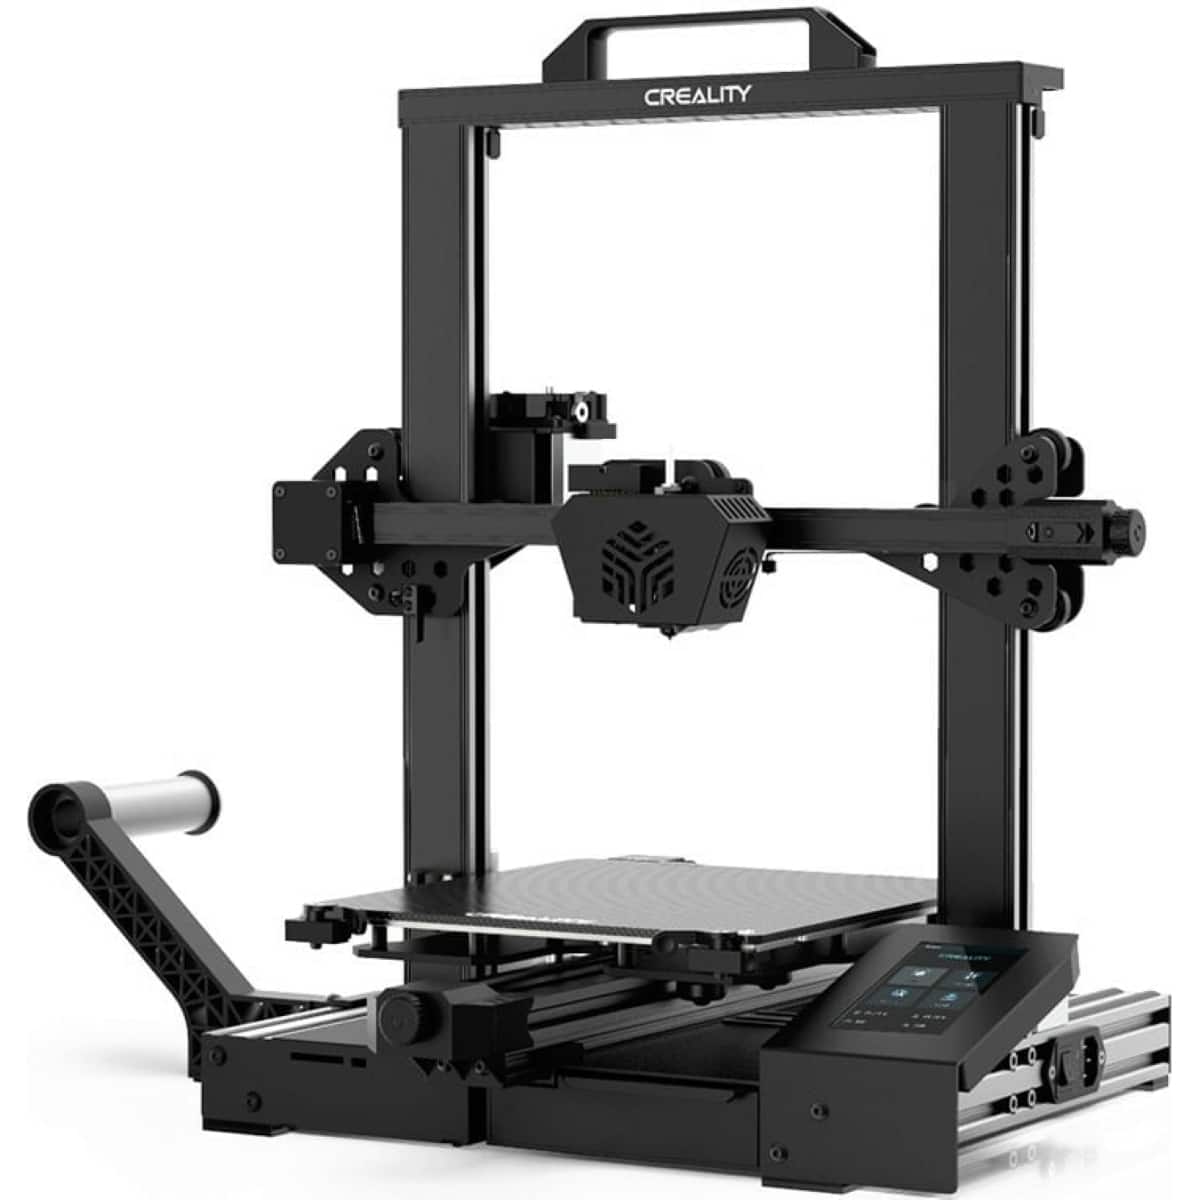 Køb Creality CR-6 SE 3d printer - Pris 3699.00 kr.